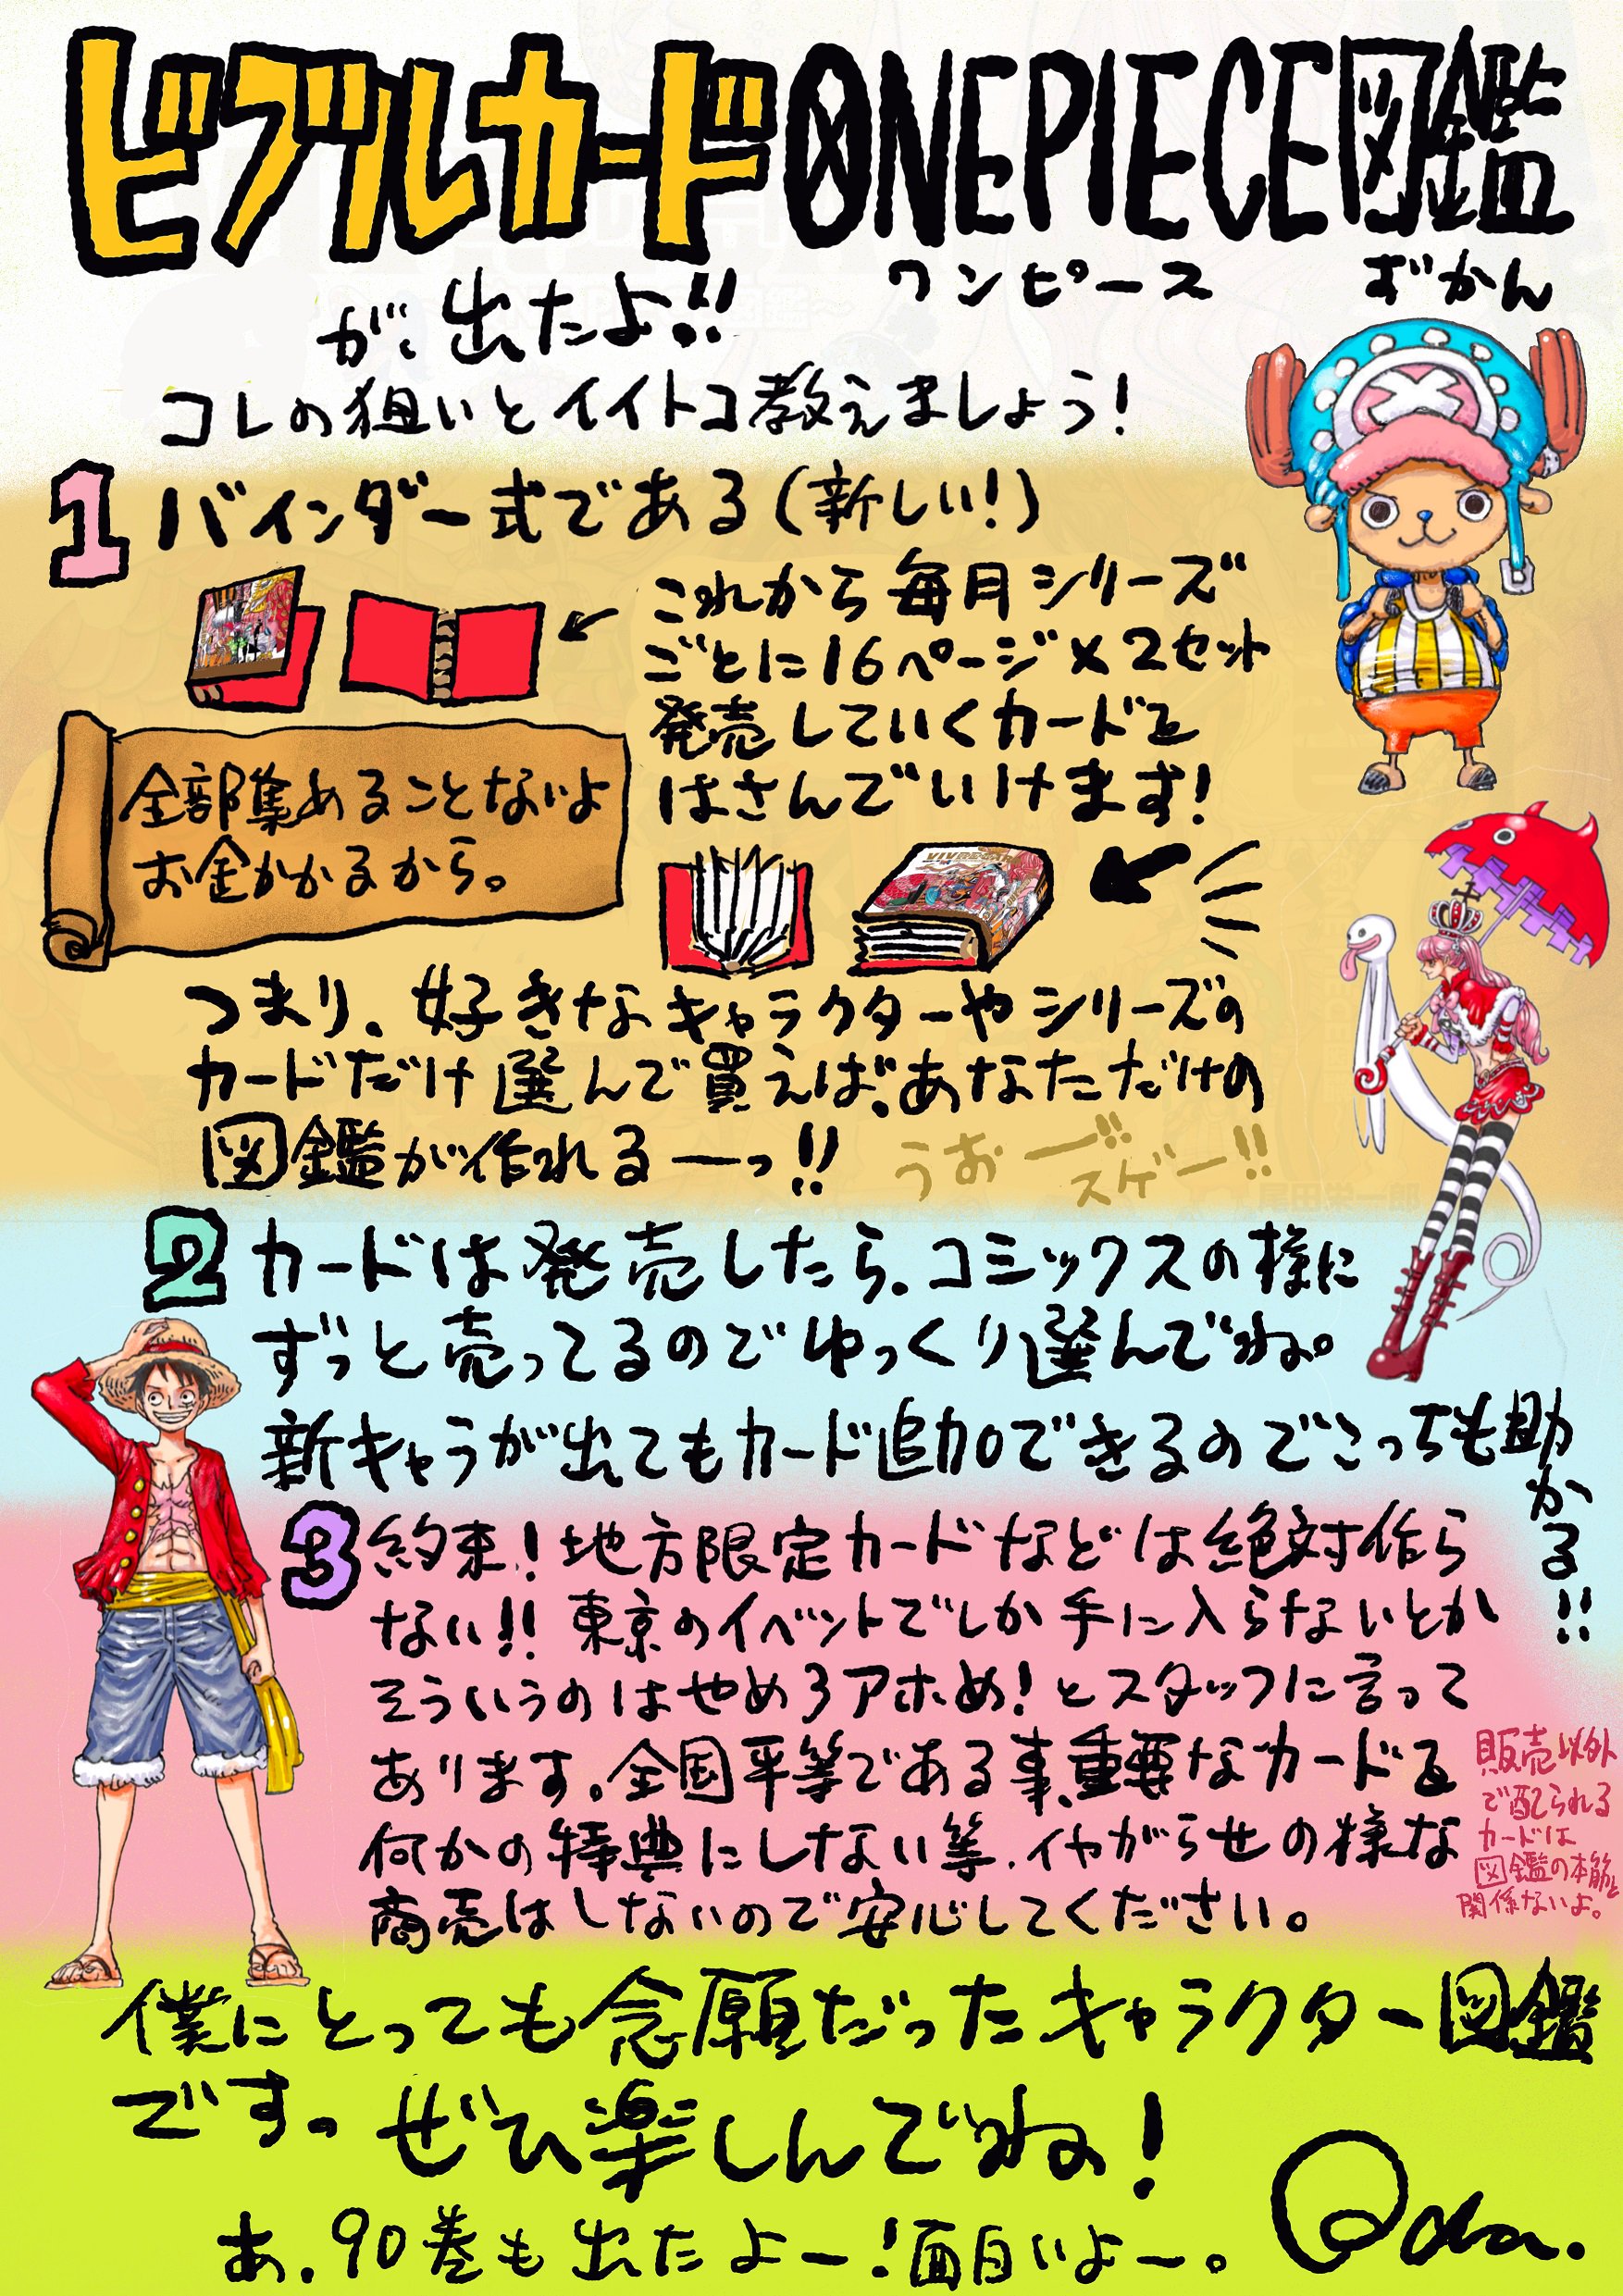 ワンピース ビブルカード 全種類&図鑑 - コミック/アニメグッズ